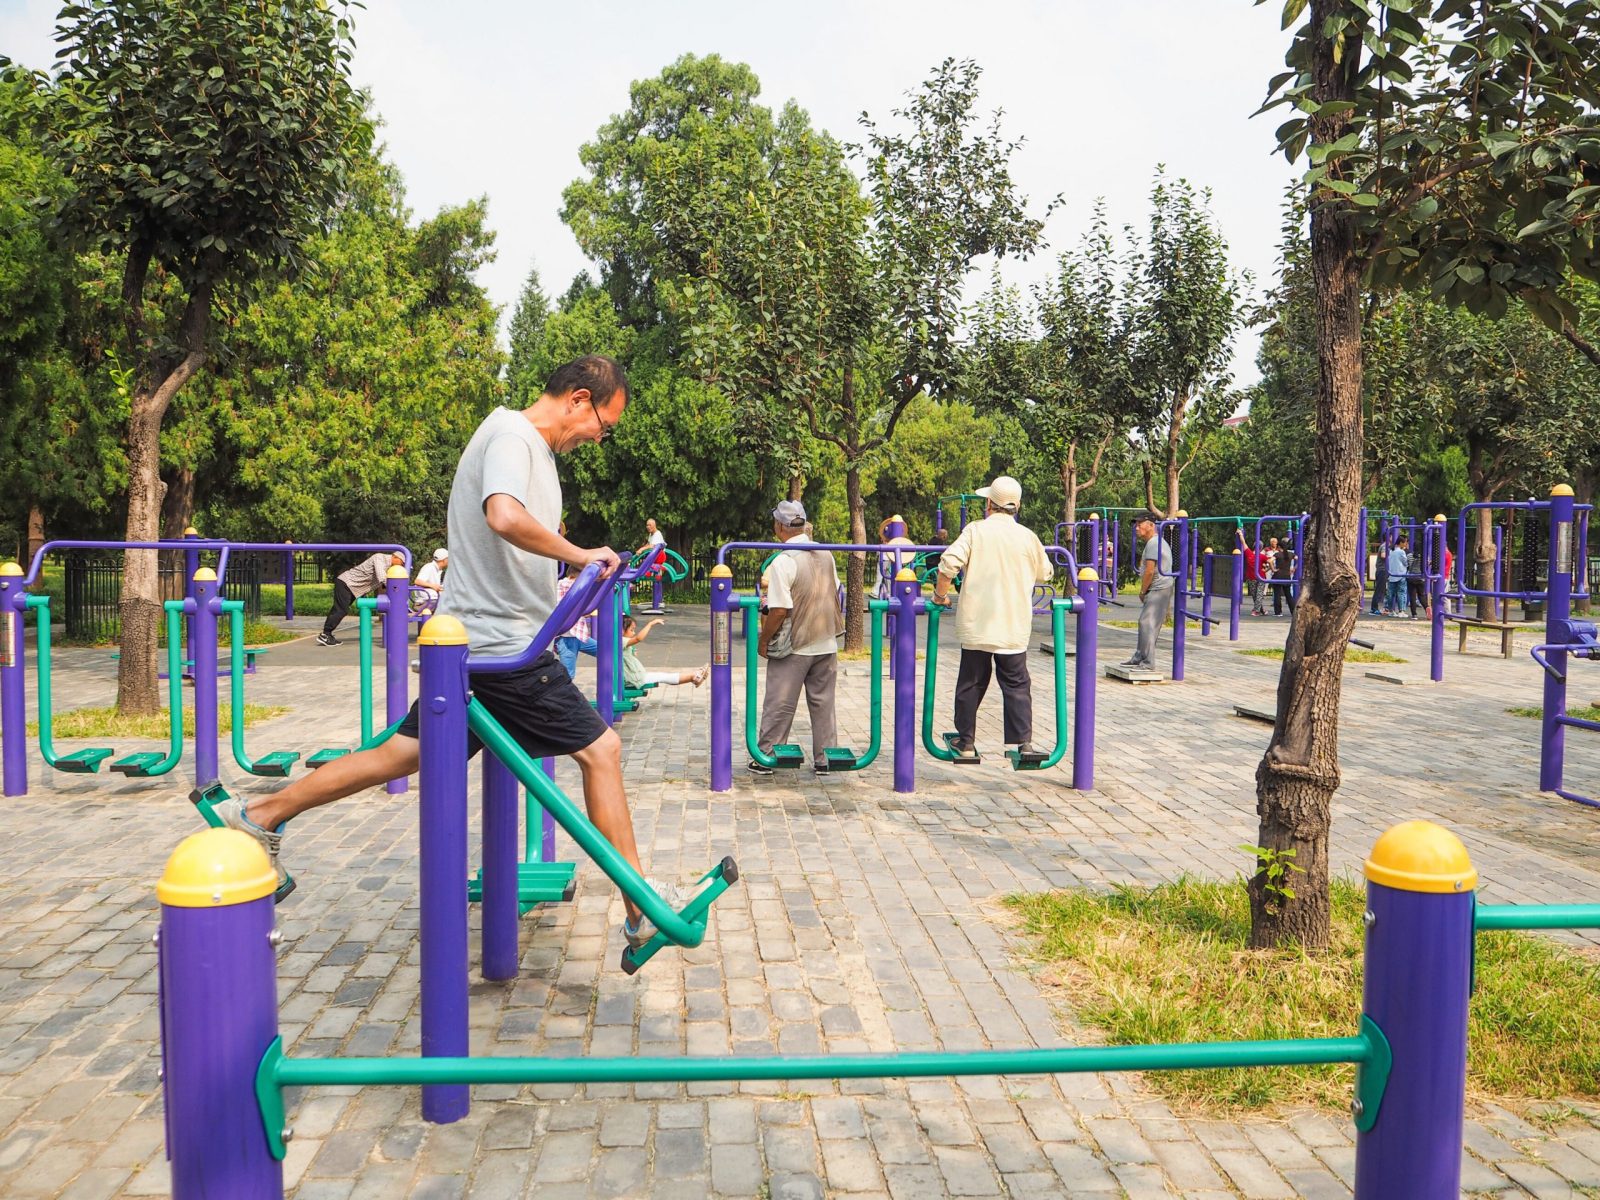 aparatos de gimnasio para ejercicio actividad personas mayores parques scaled